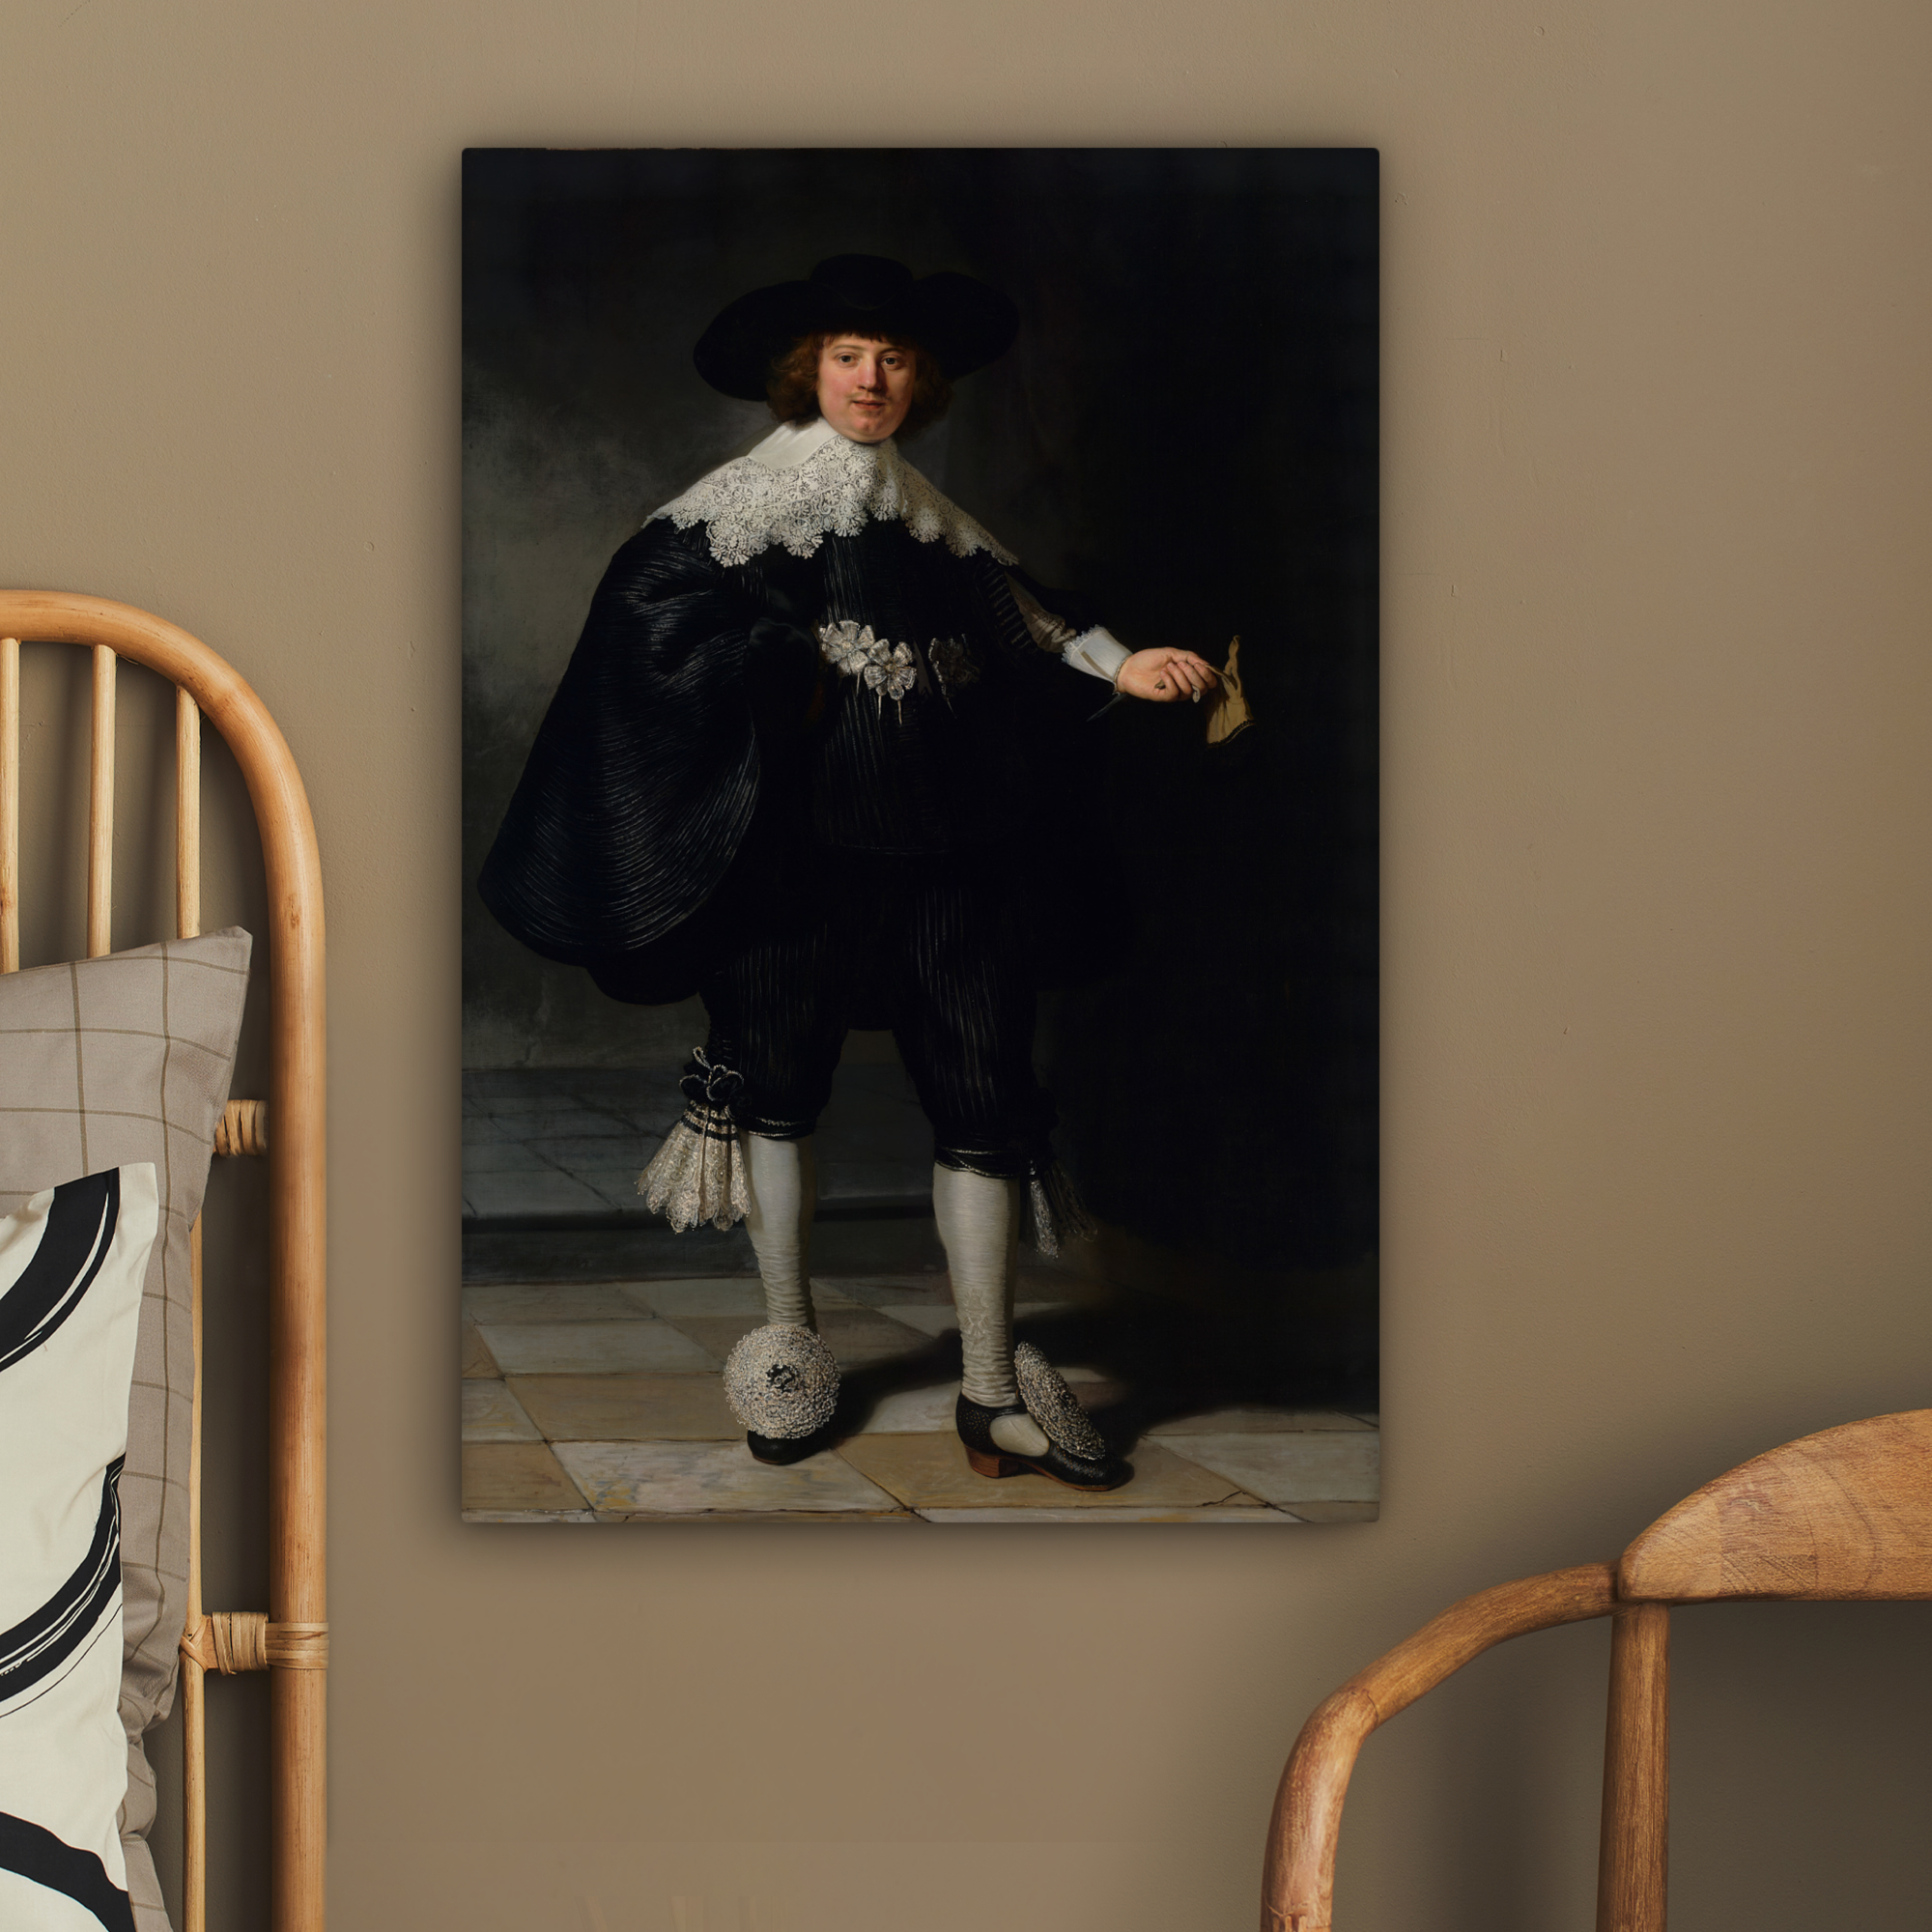 Leinwandbild - Das Hochzeitsbildnis von Marten Soolmans - Rembrandt van Rijn-2